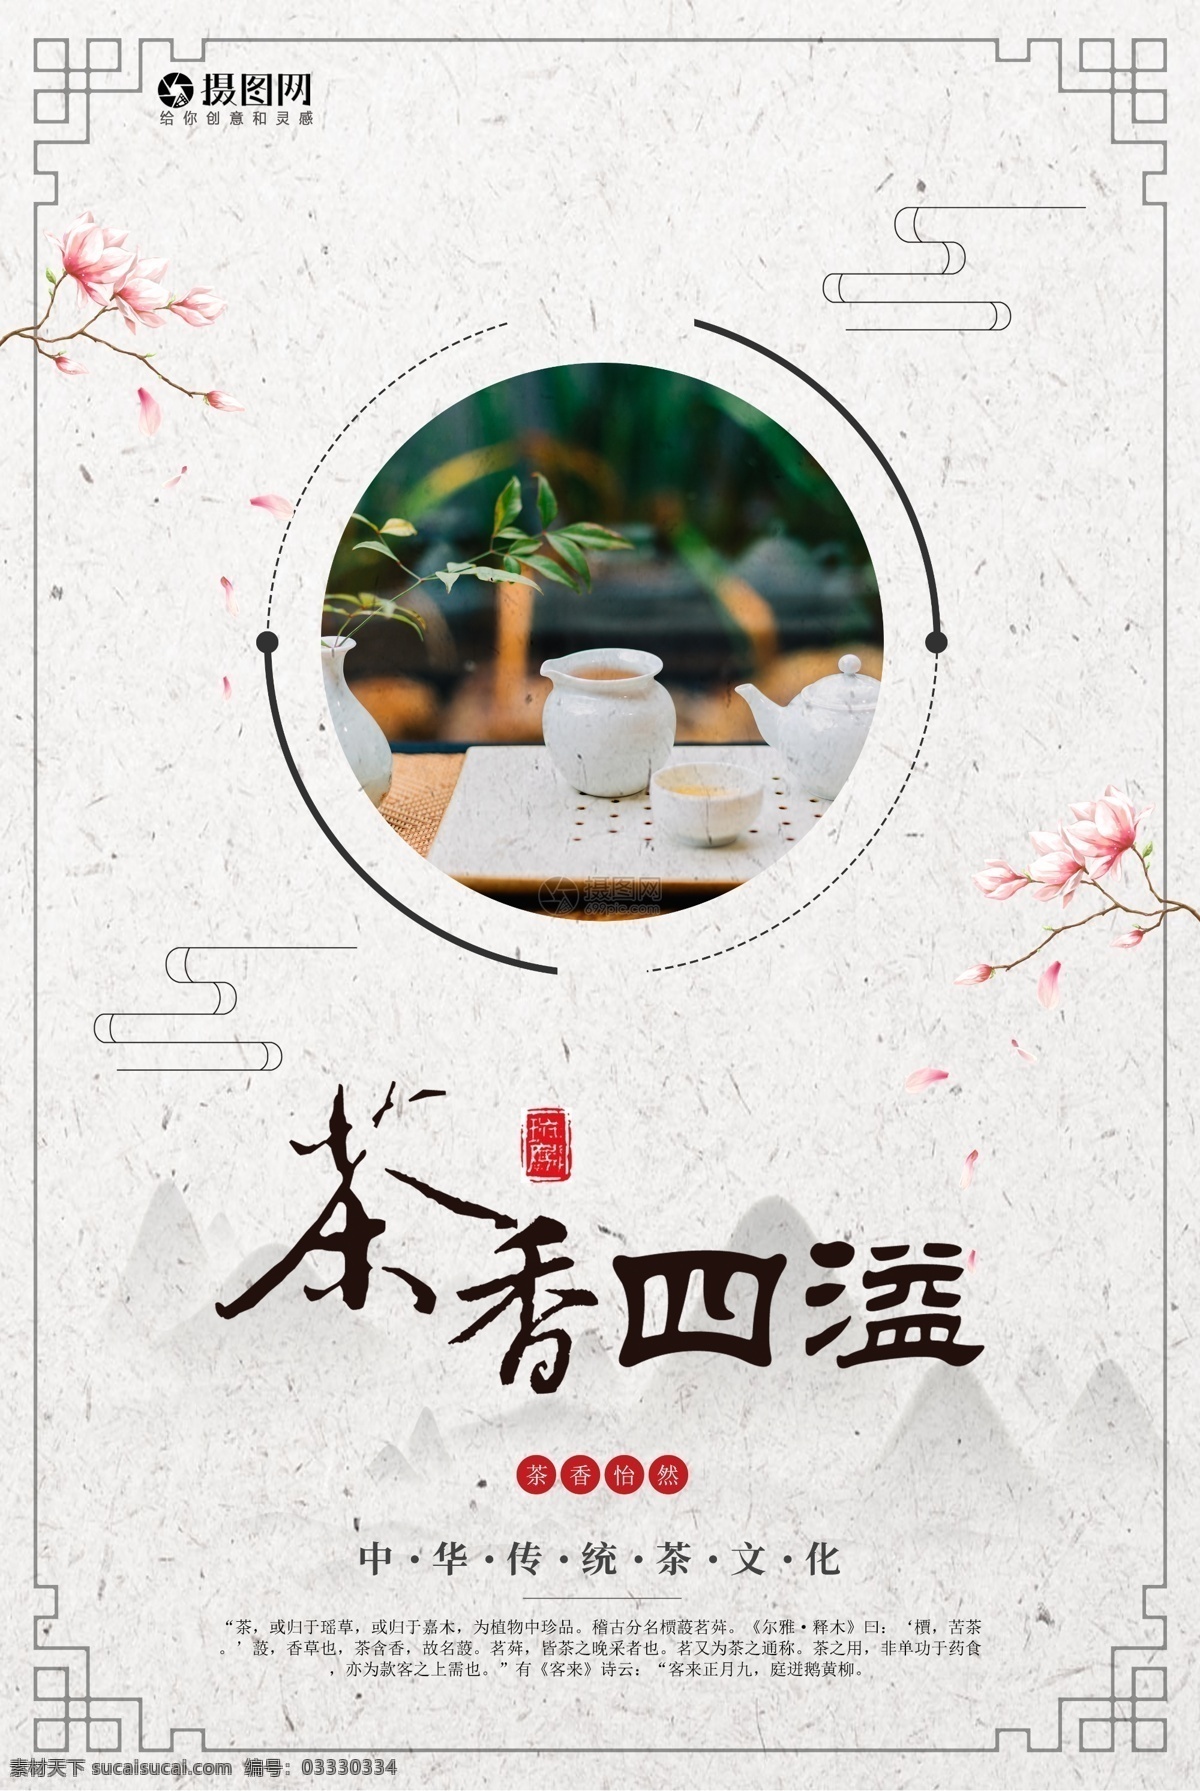 茶香四溢海报 茶香 茶香四溢 茶叶 茶之道 茶 文化 中国文化 茶叶海报 中国风 特色 品味